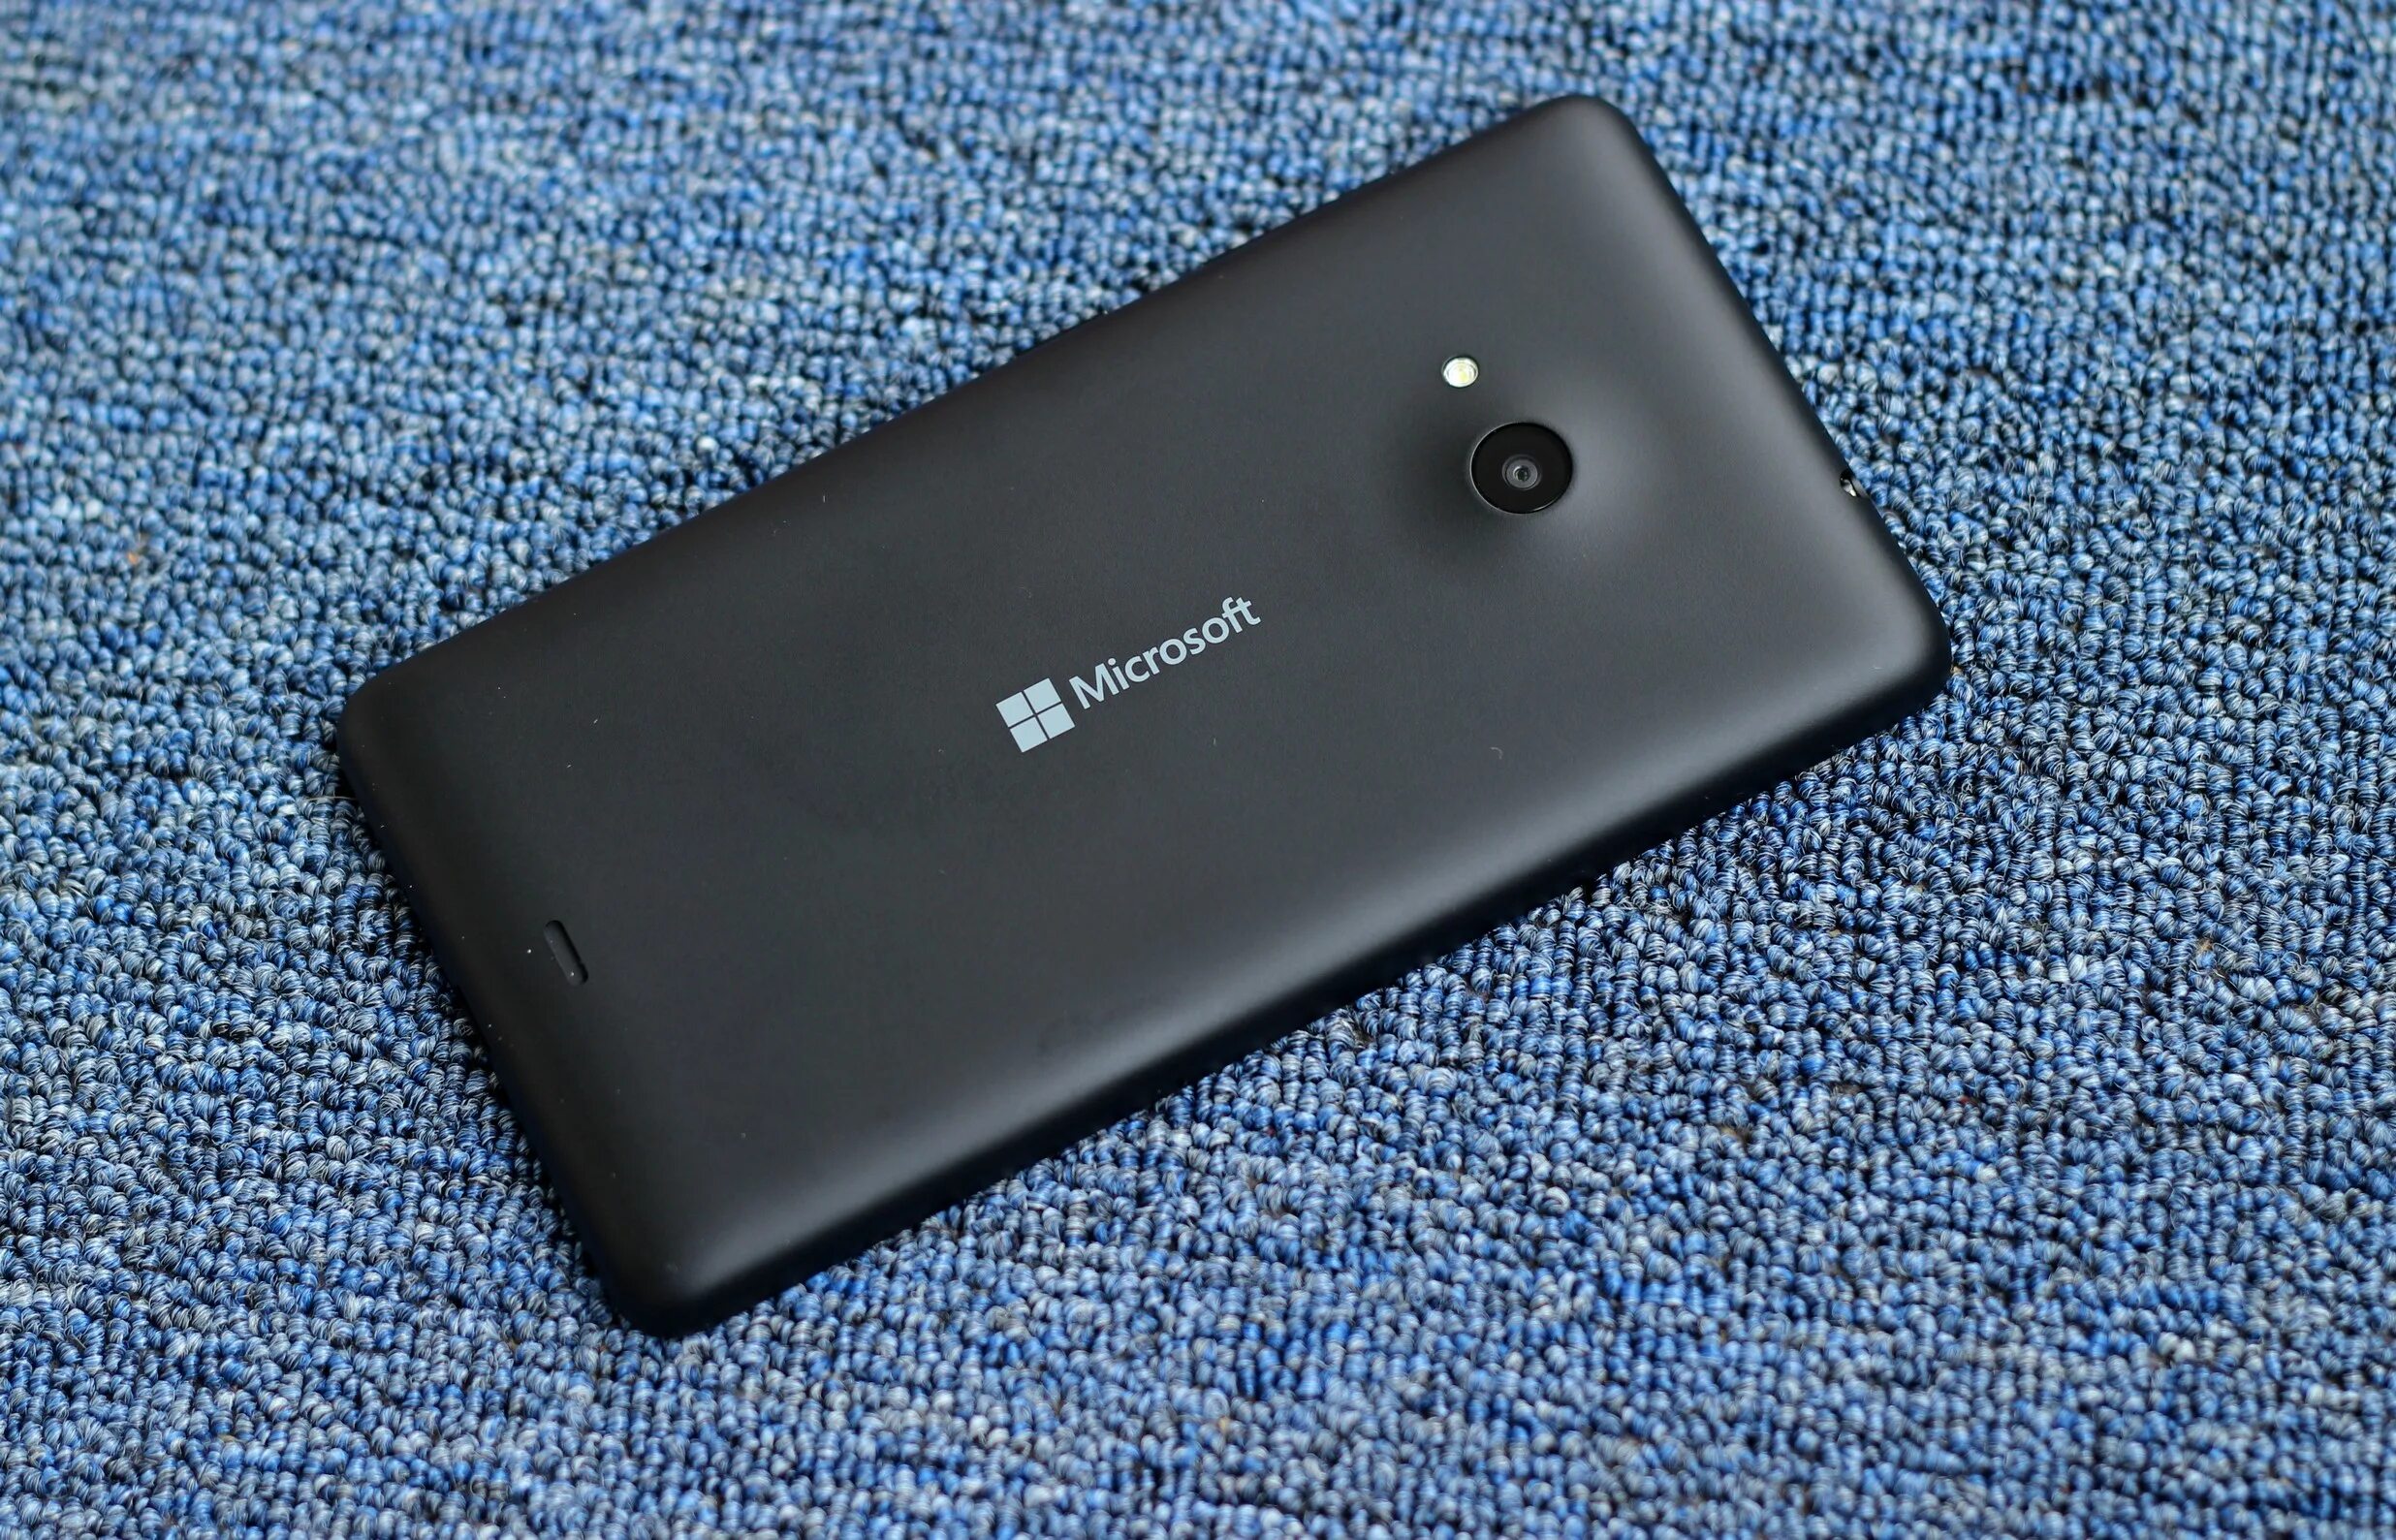 Microsoft 535. Lumia 535 Dual SIM. Microsoft Lumia 535 Dual SIM. Lumia 535. Телефон Майкрософт 535.